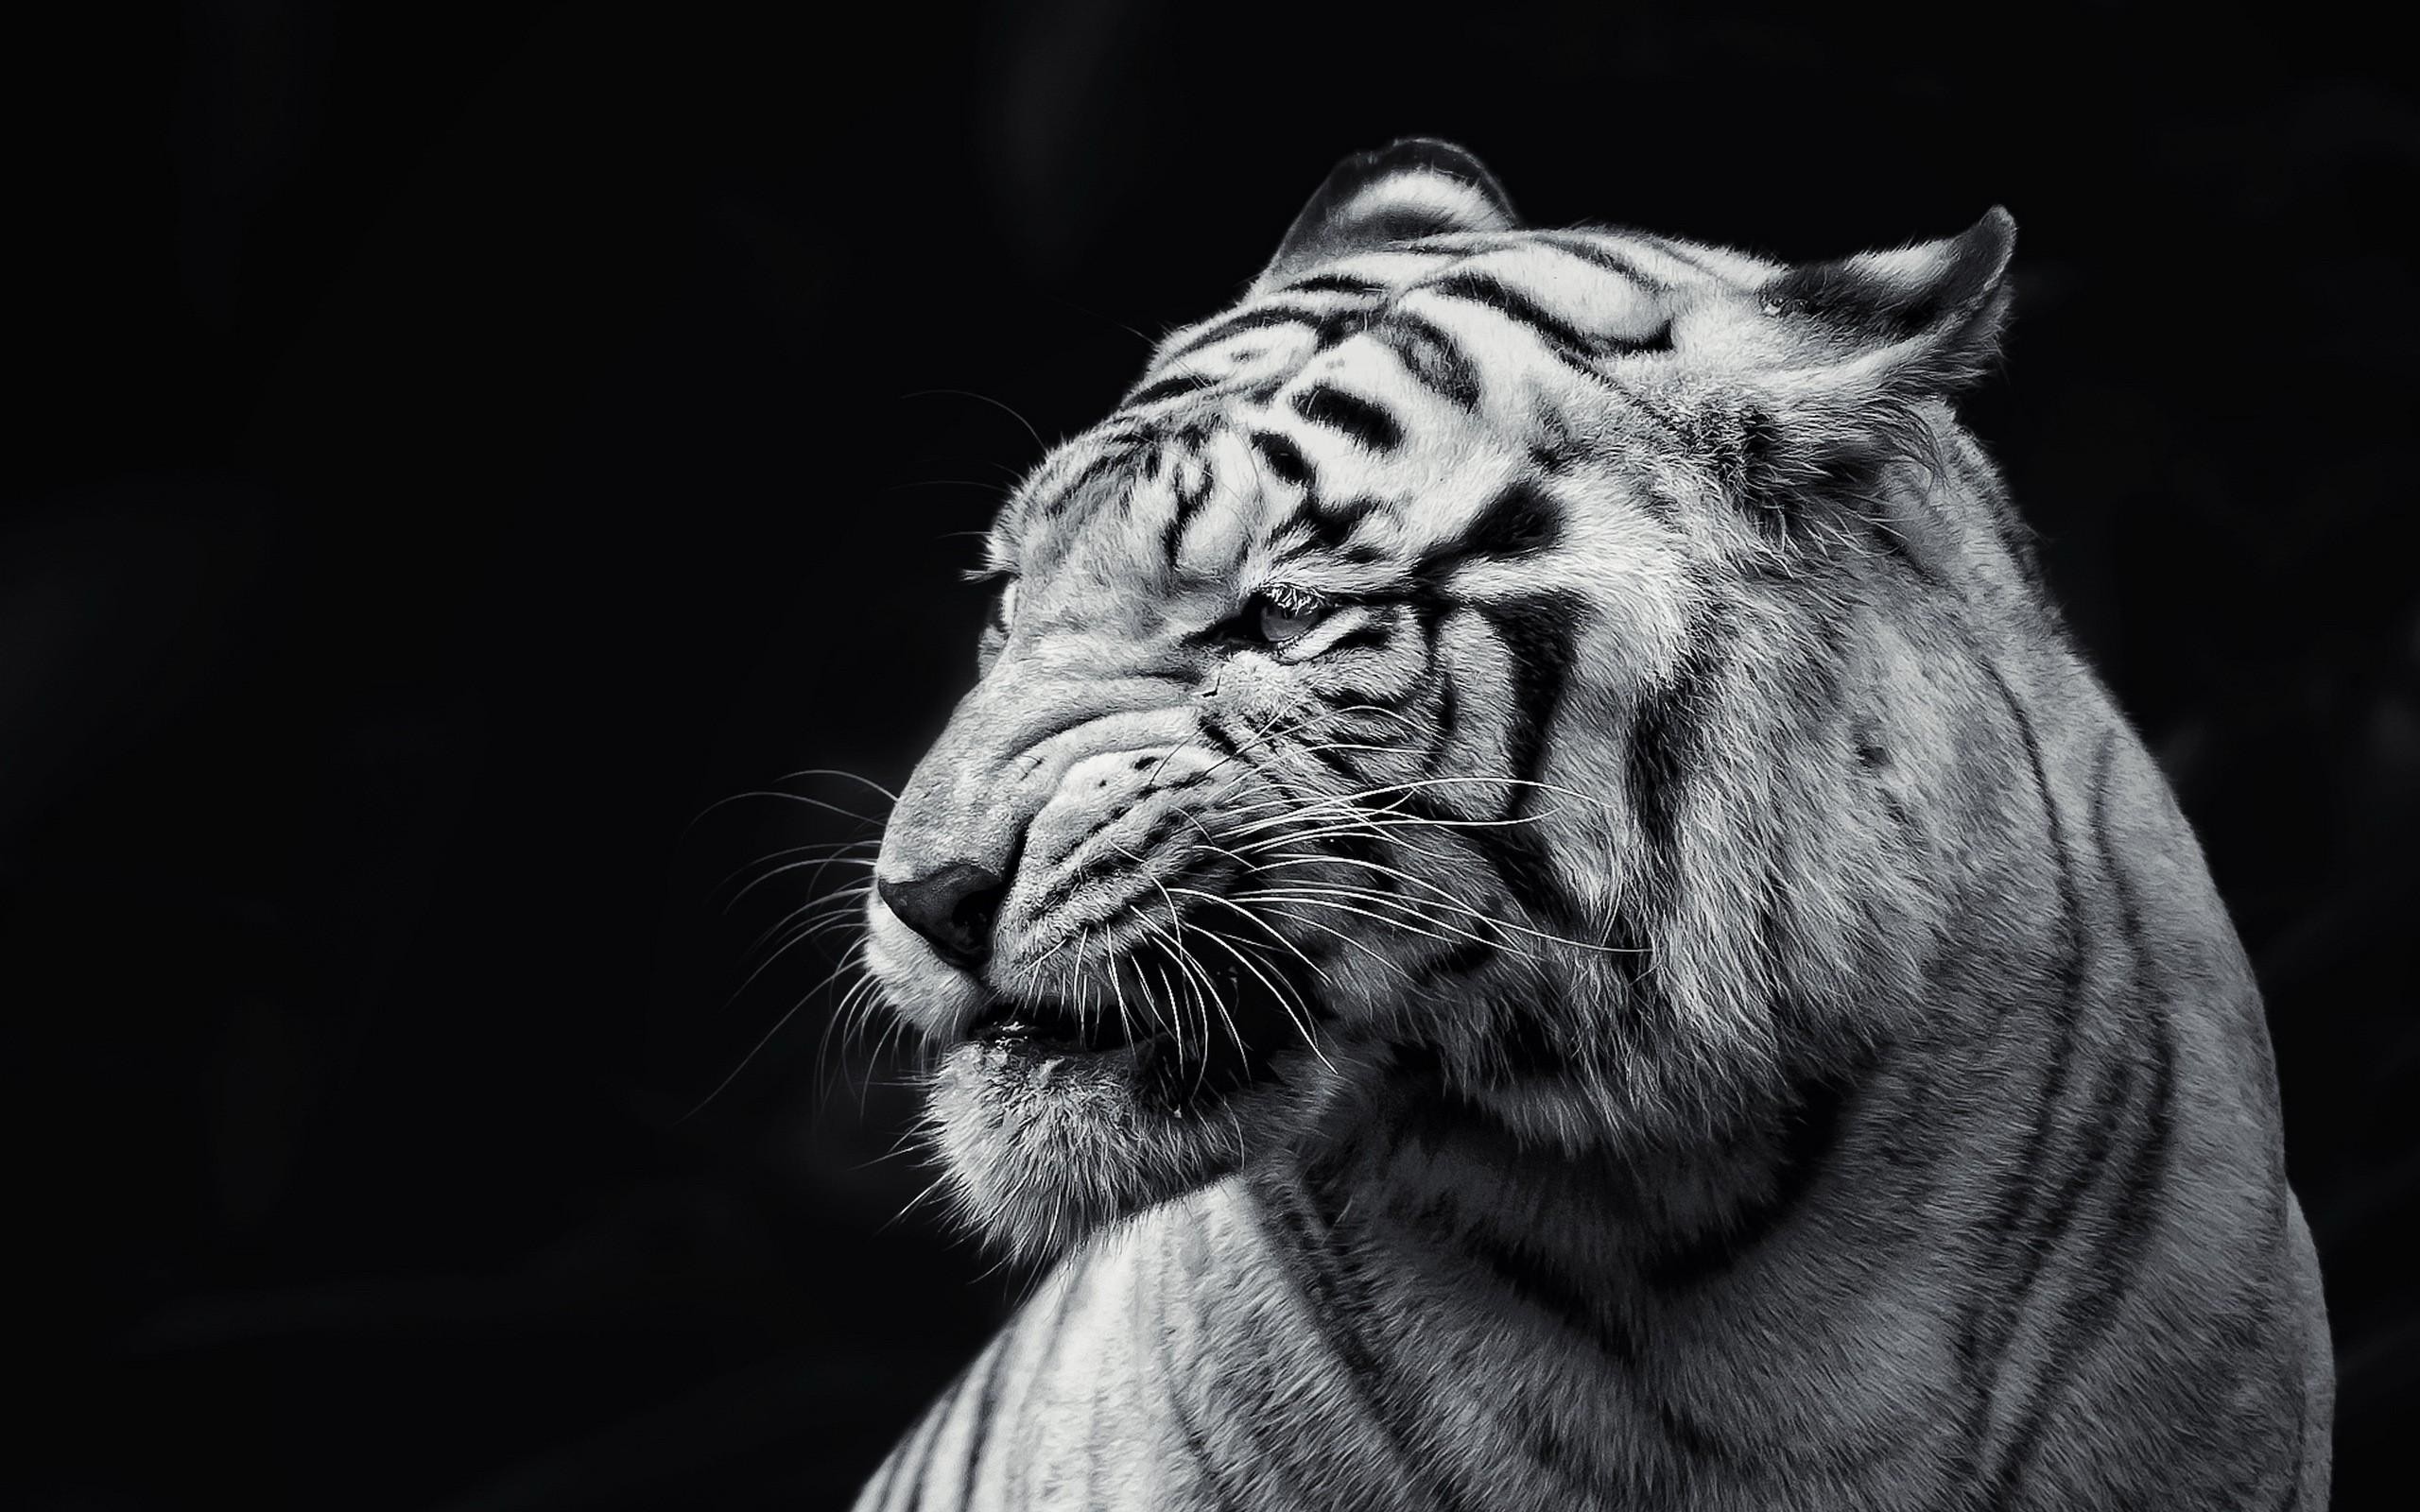 2560x1600 WhiteTiger0150.png 1600x1200x24(RGB) #white #tiger #animal #endangered  #predator #majestic | Yi! | Pinterest | Tigers, Predator and Animal